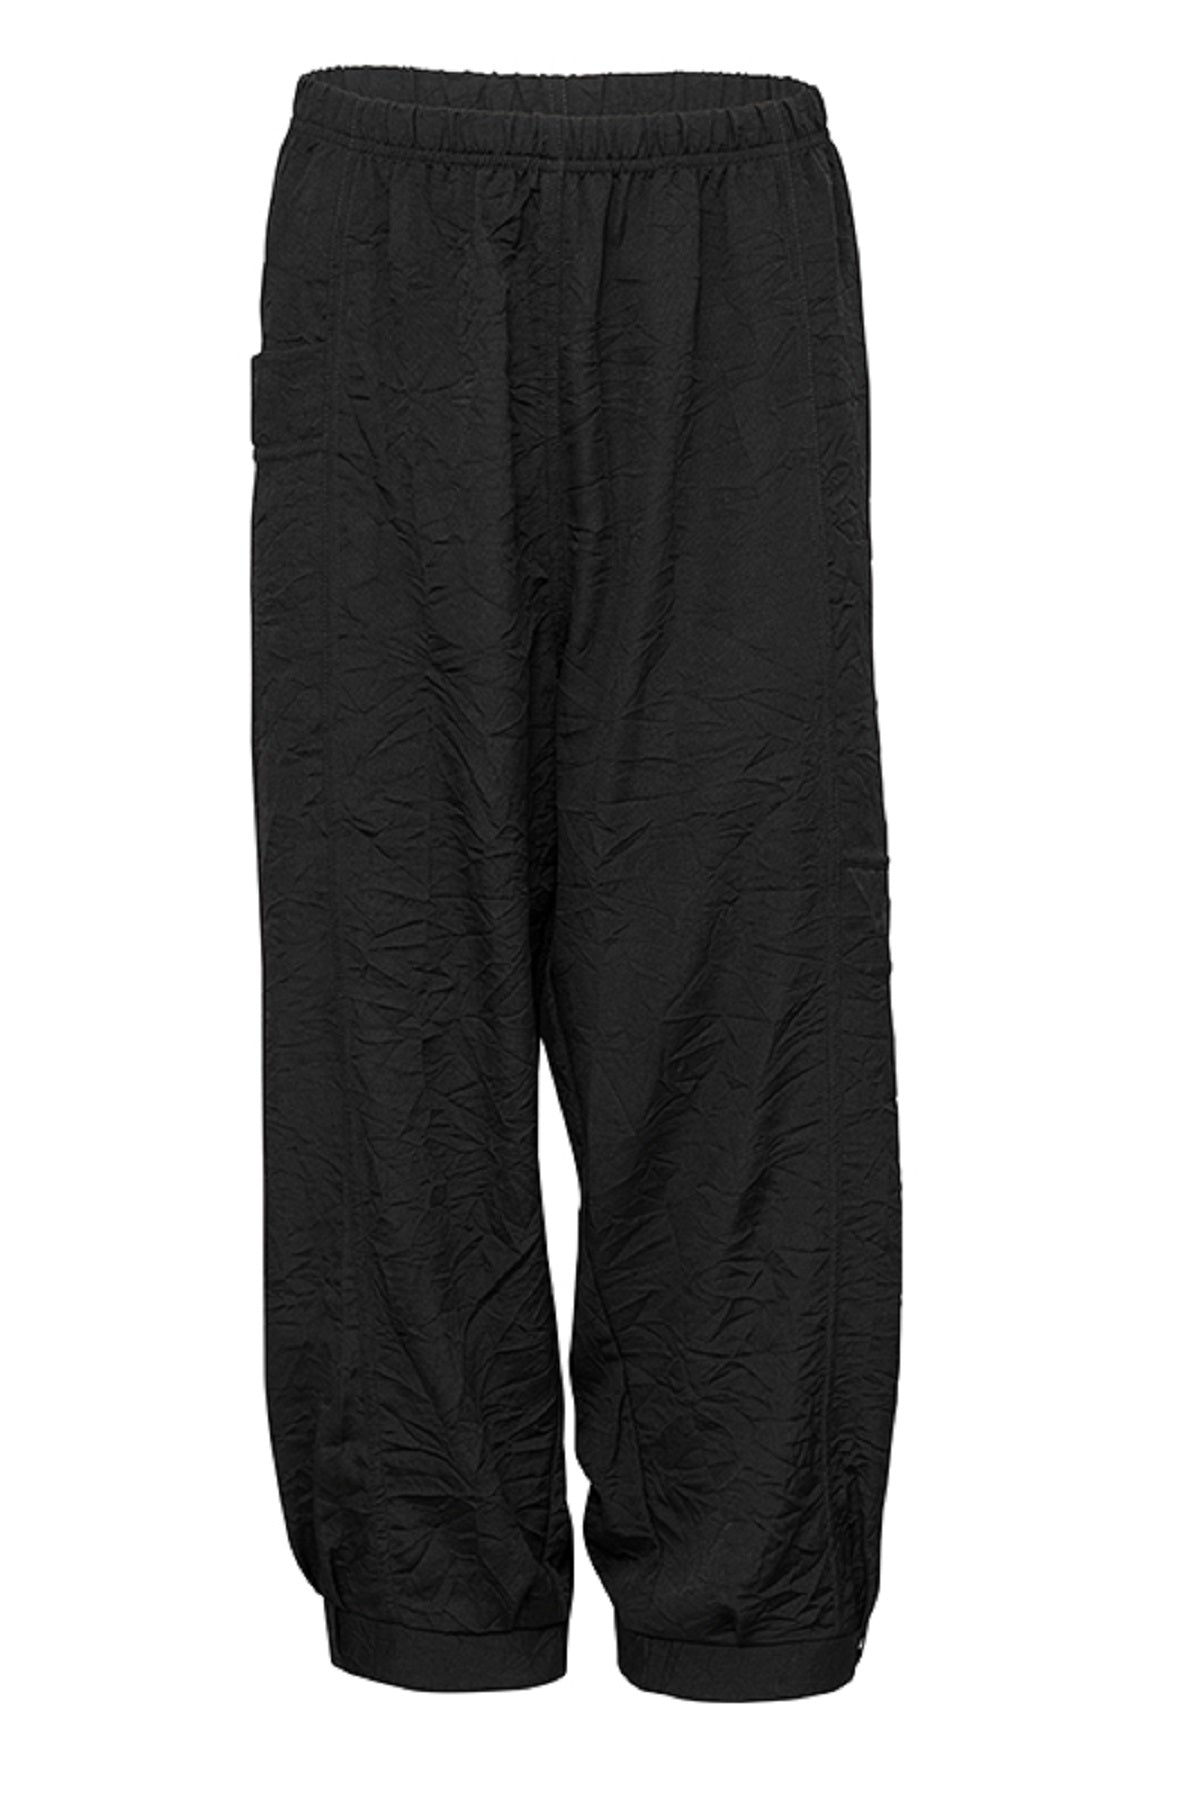 E Avantgarde Pants 12900-10, Black